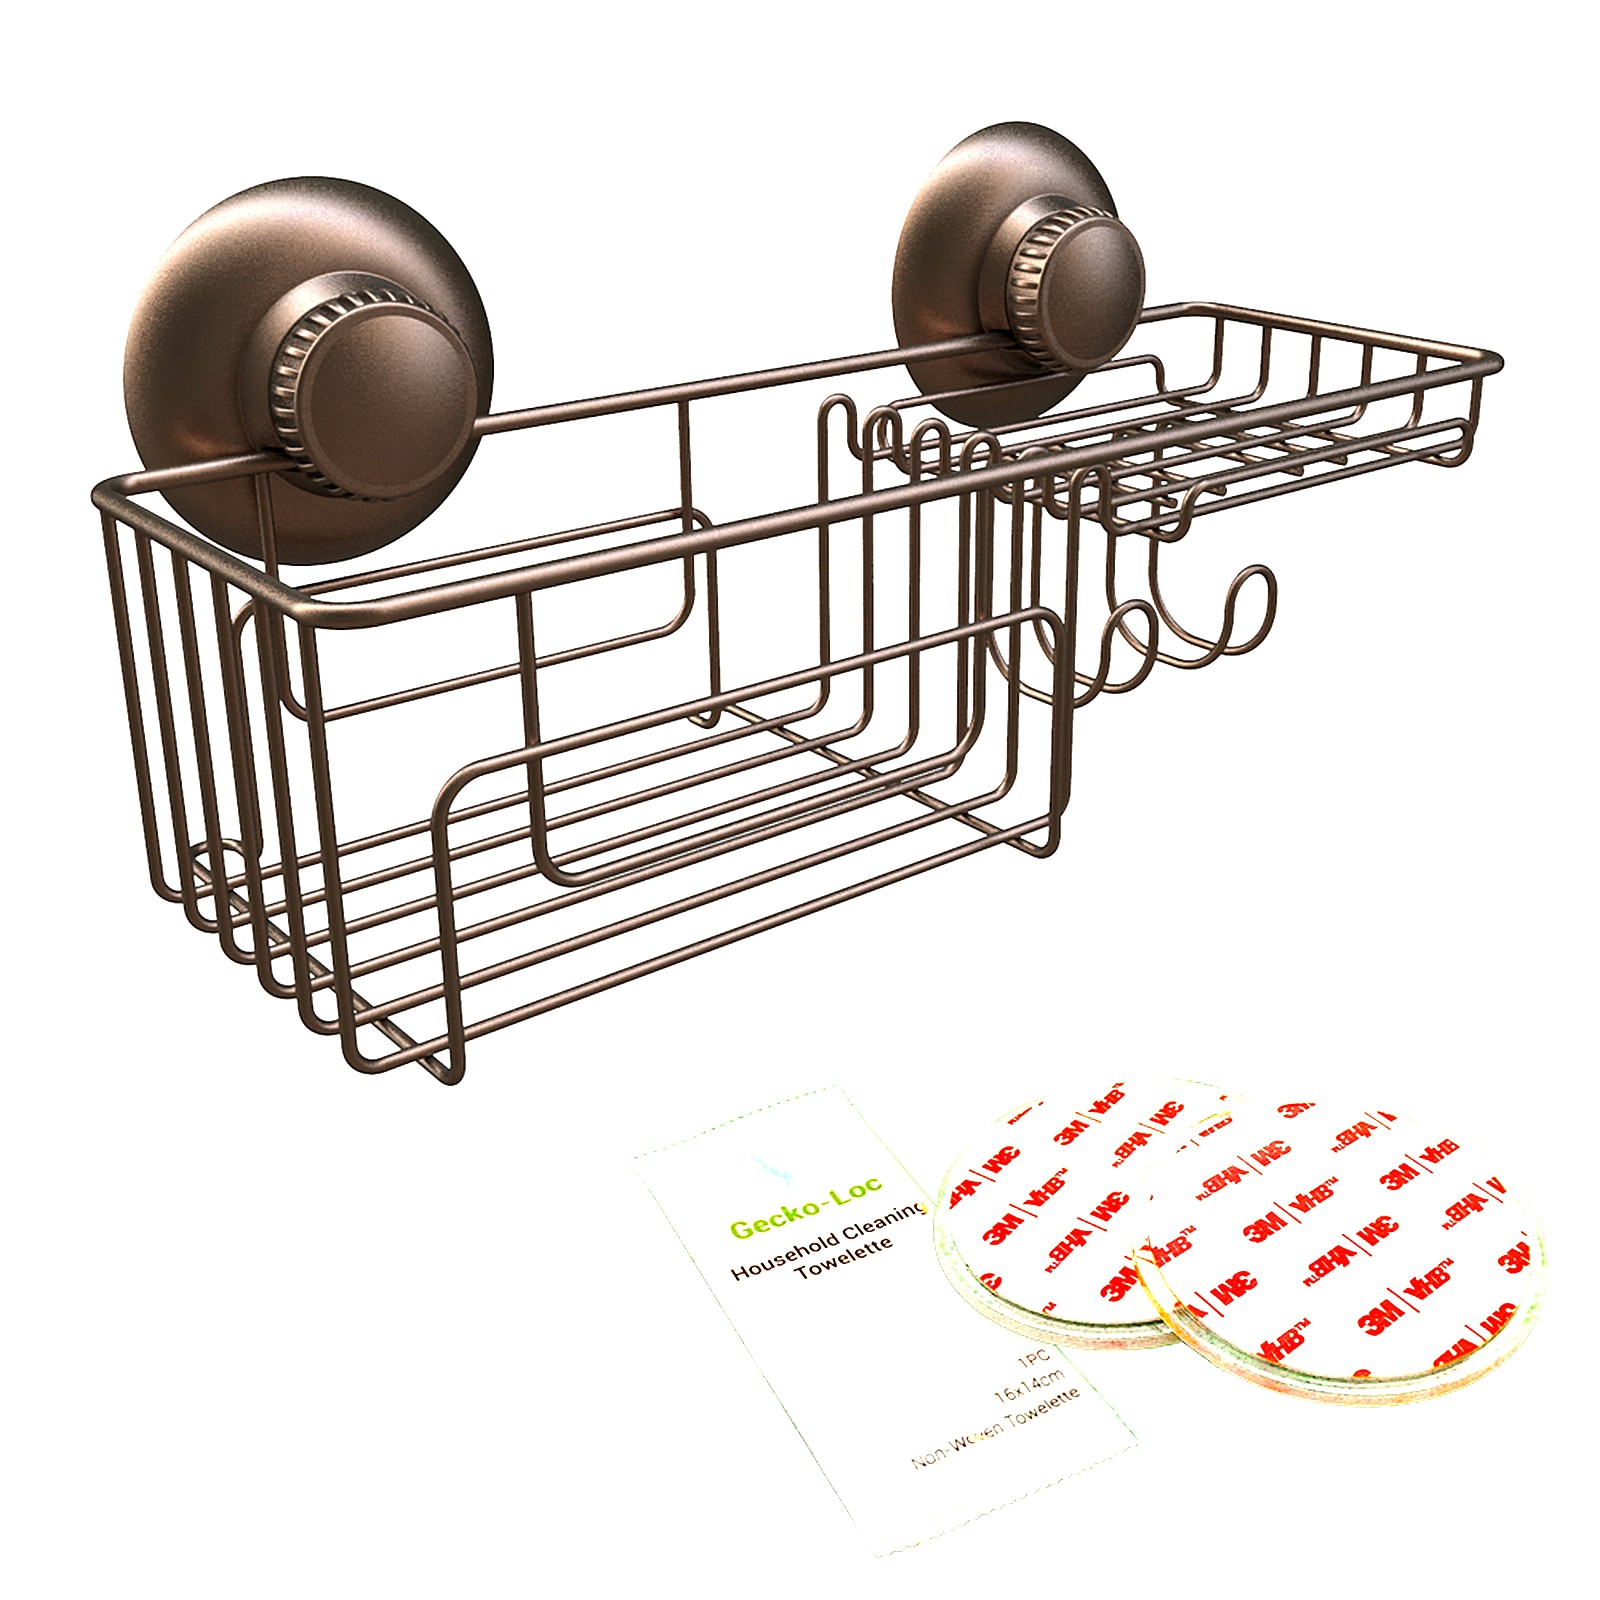 Gecko-Loc Suction Cup Shower Caddy Bath Organizer – Bathroom Storage Basket  (Bronze, Deep) – Gecko-Loc